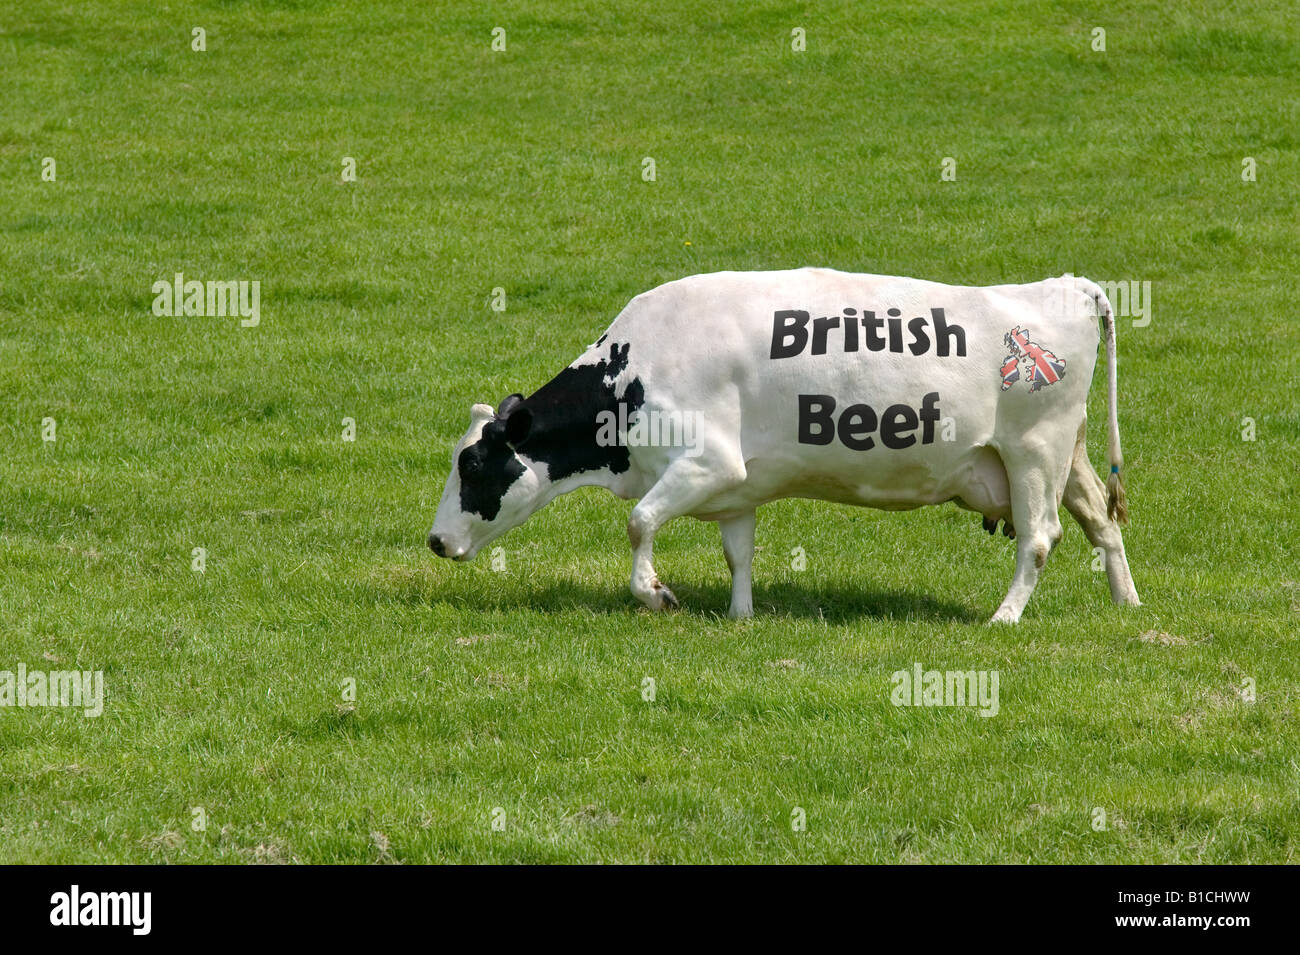 Concetto di immagine di una mucca con le parole la carne di manzo britannica come i suoi segni e una unione jack mappa del Regno Unito Foto Stock